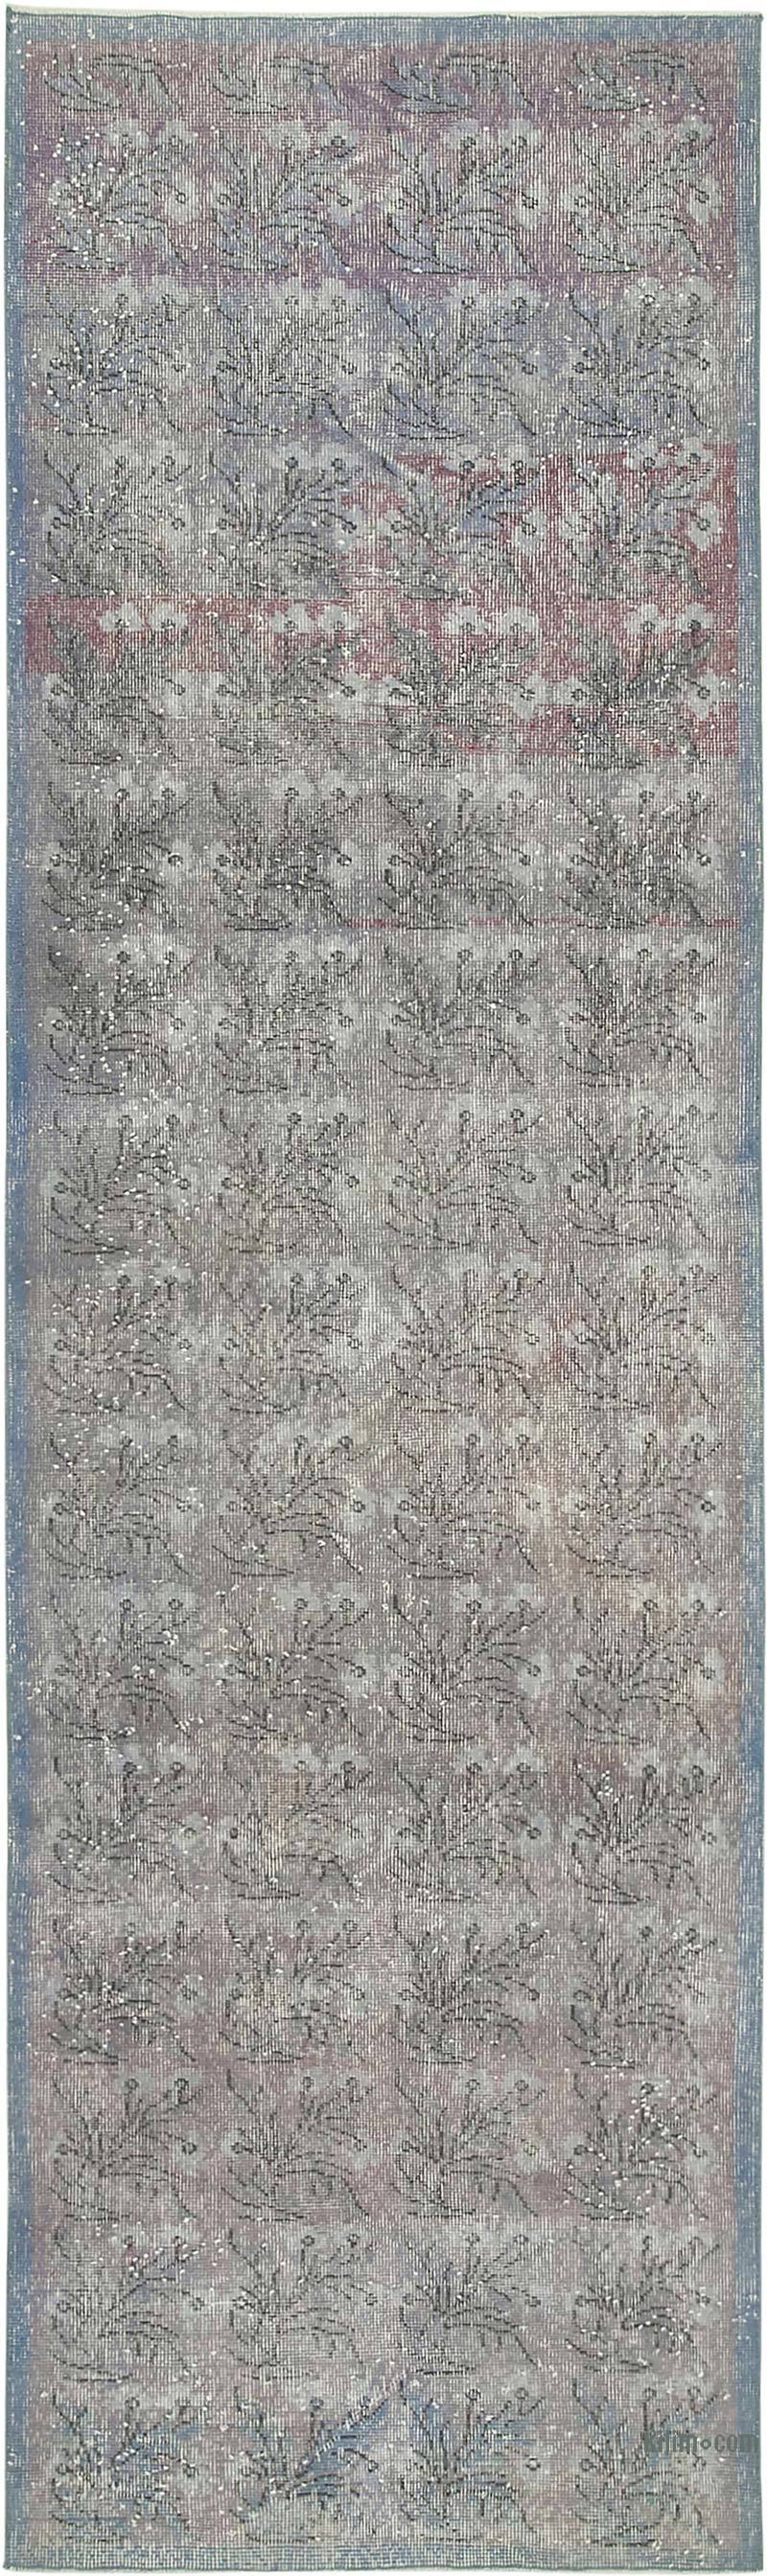 Lacivert Boyalı El Dokuma Vintage Halı Yolluk - 98 cm x 339 cm - K0054477